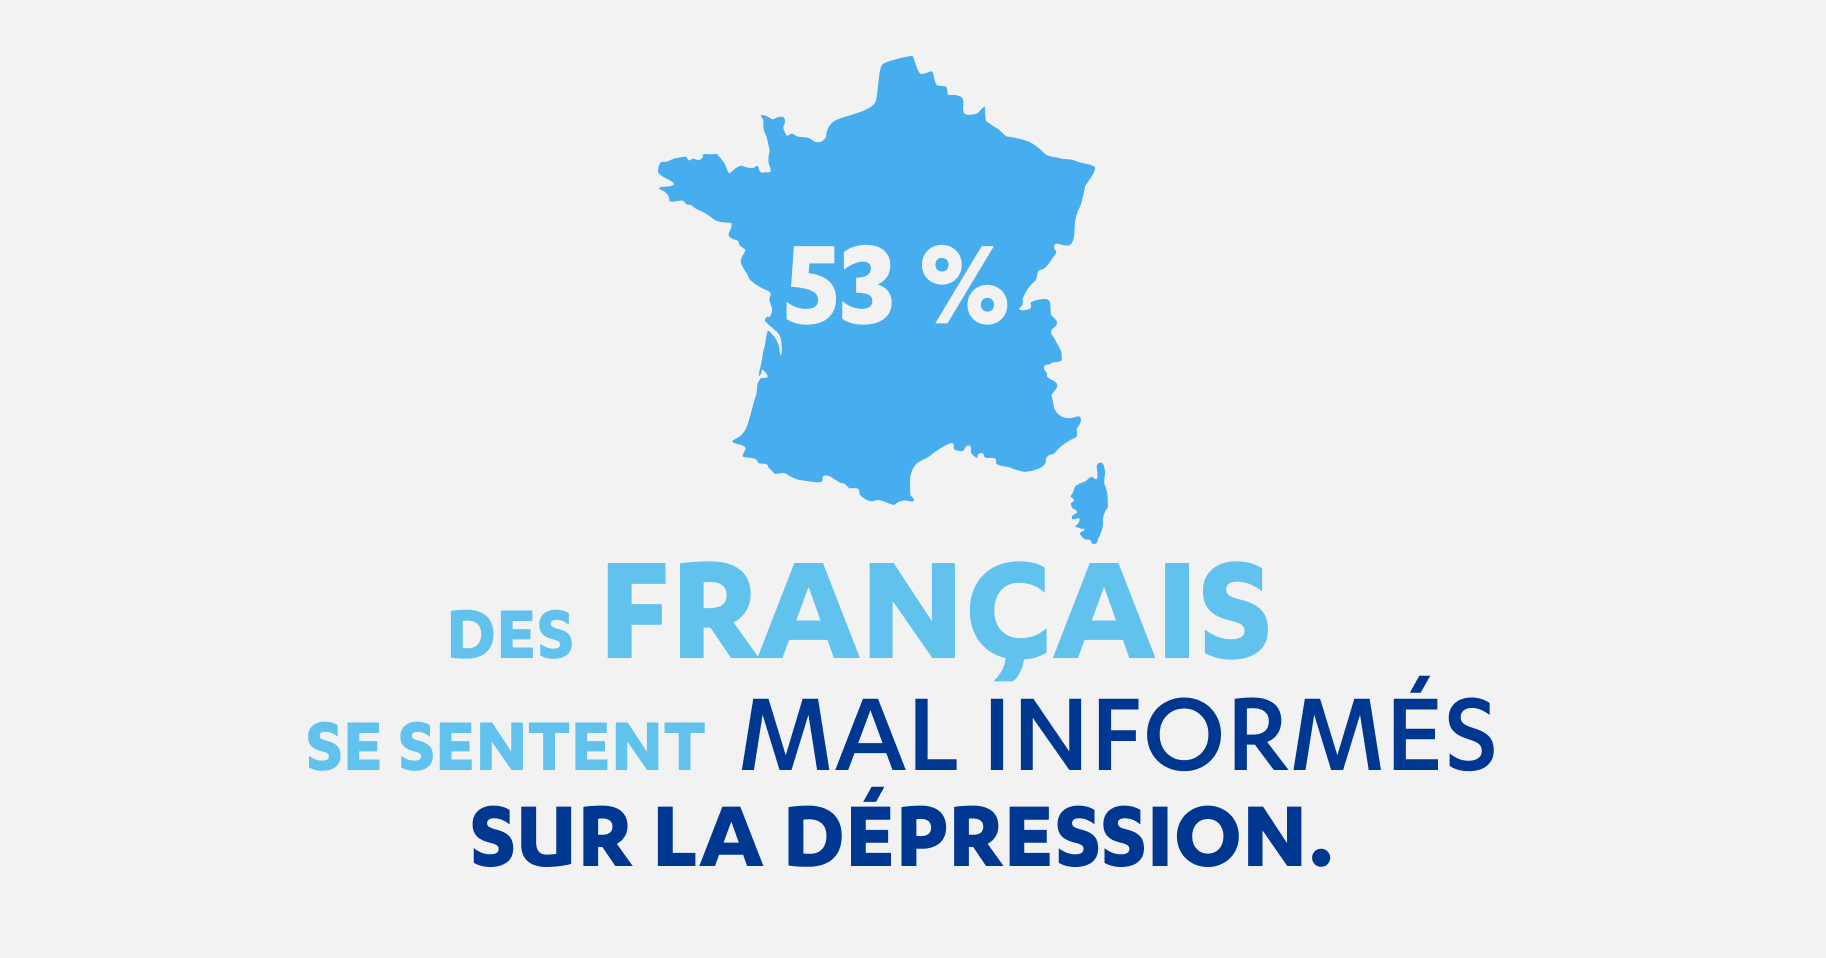 53 % des Français se sentent mal informés sur la dépression.